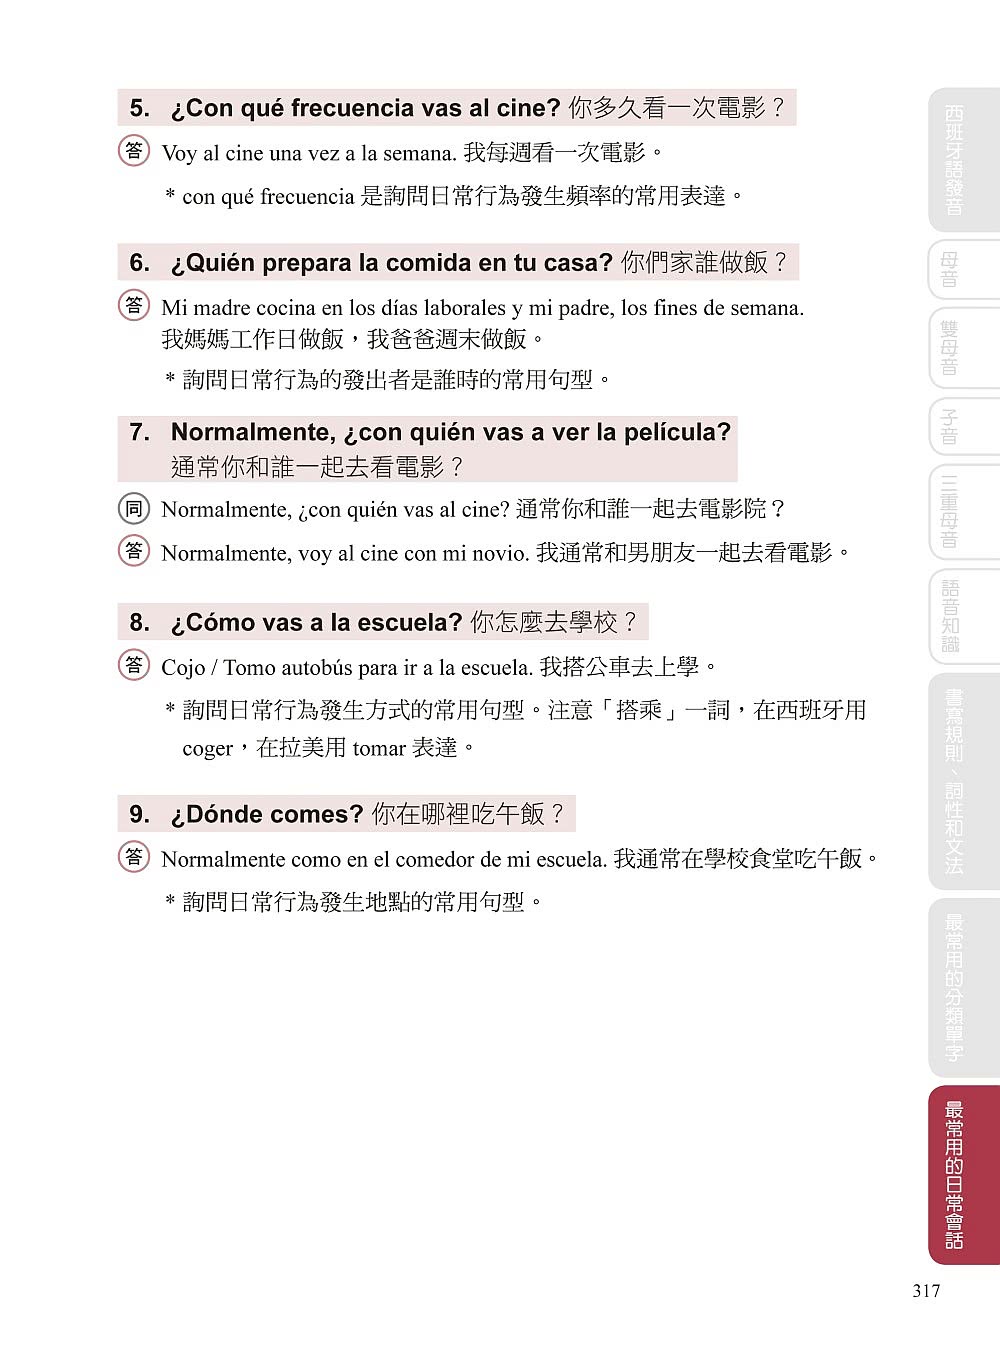 全新！自學西班牙語看完這本就能說：專為華人設計的西語教材 發音、單字、文法、會話一次學會（附QR碼線上